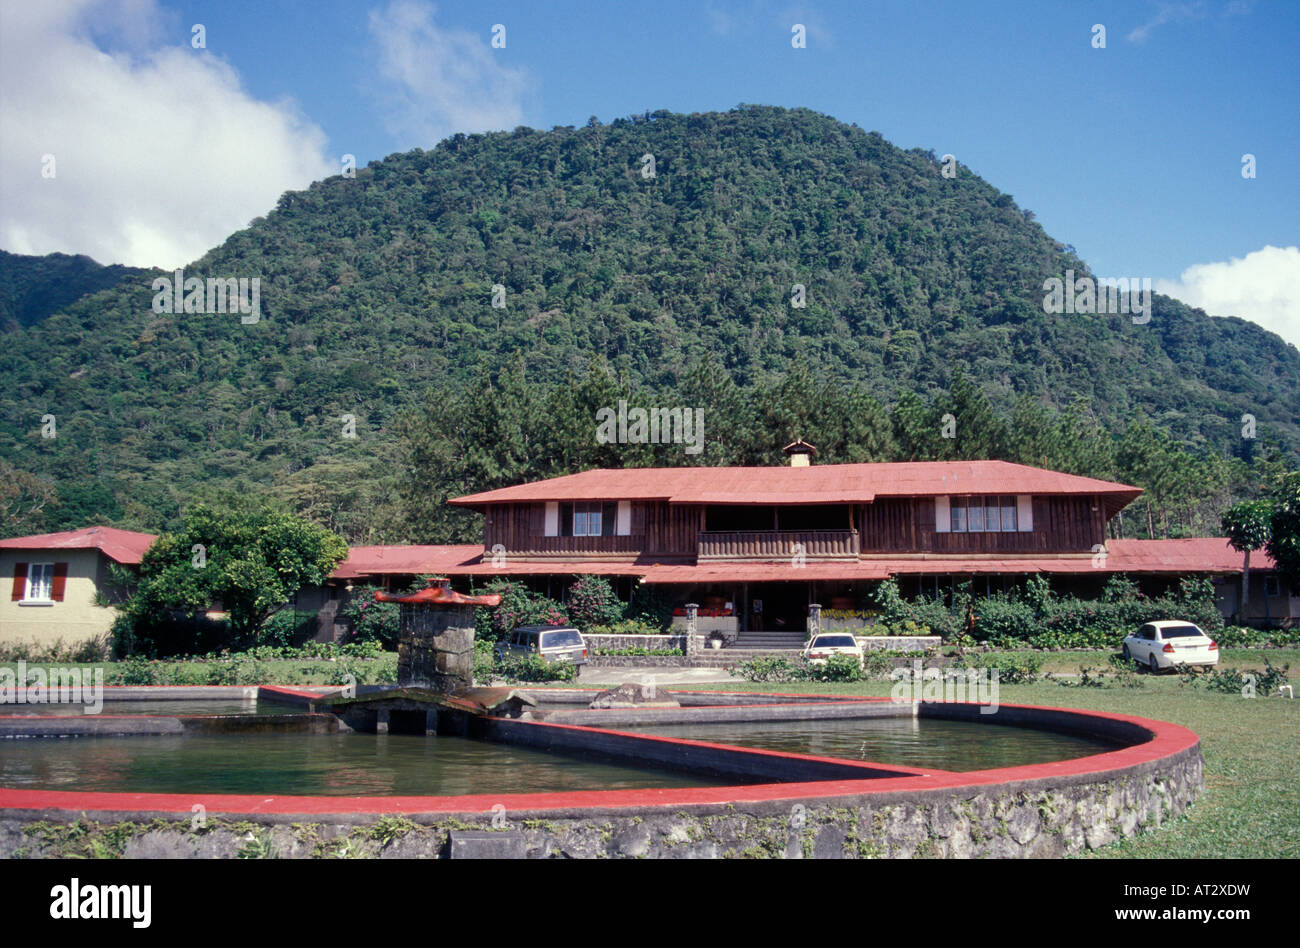 Hotel Campestre, El Valle de Anton, Panama, Central America Stock Photo -  Alamy